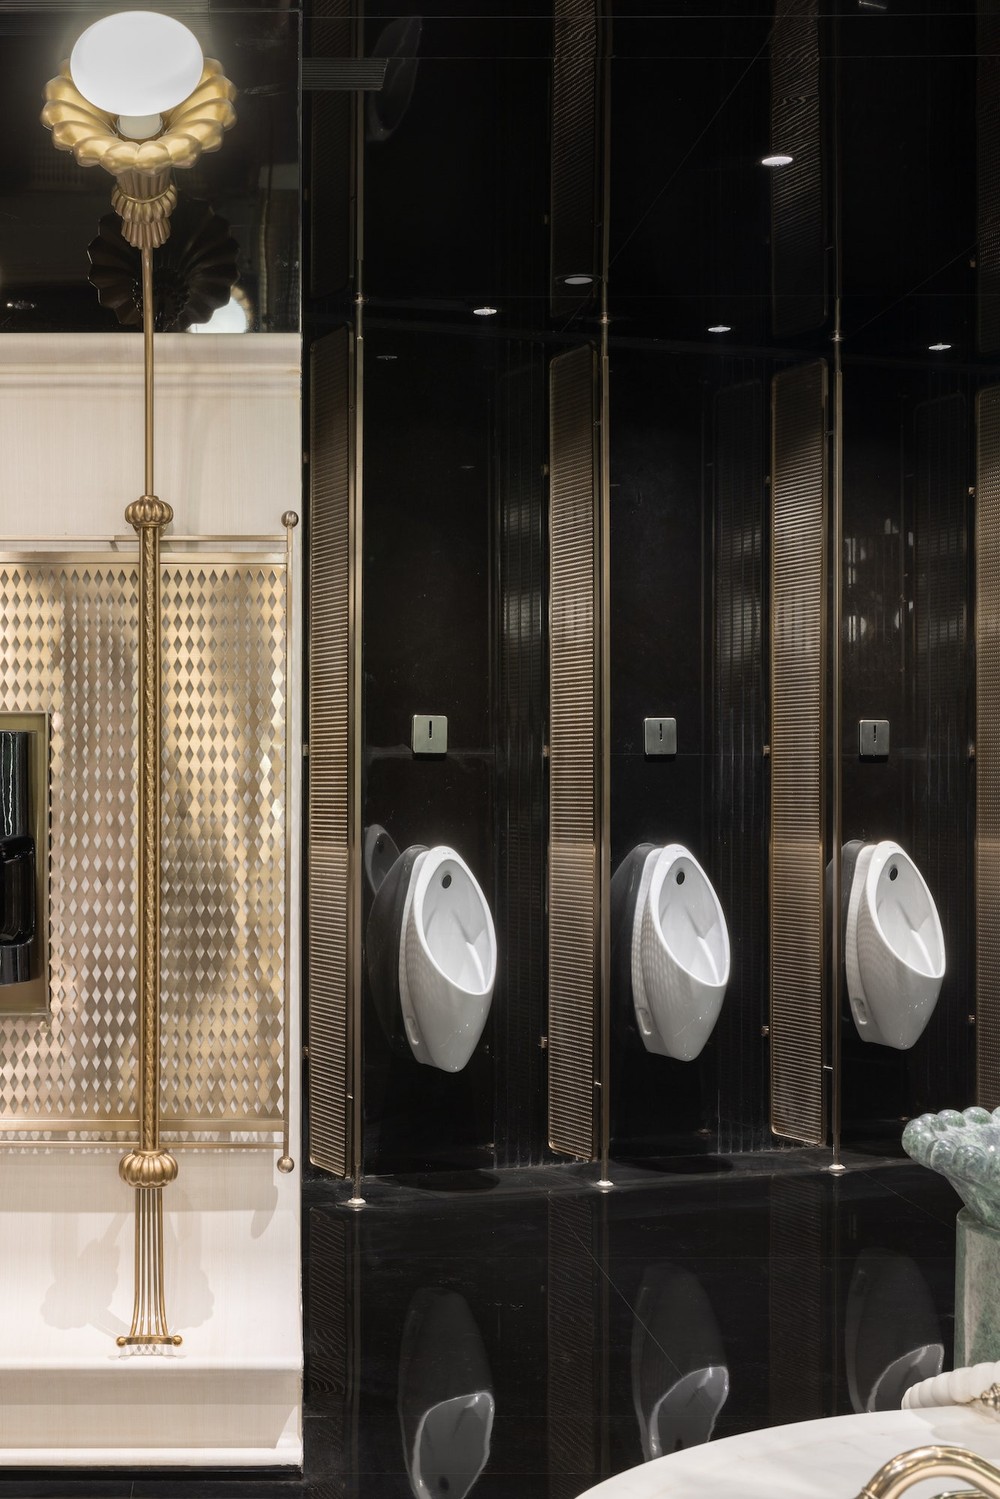 Cận cảnh nhà vệ sinh đẹp nhất thế giới: Bàn trang điểm dát vàng, bồn rửa tay lát đá cẩm thạch cực lộng lẫy - Ảnh 4.